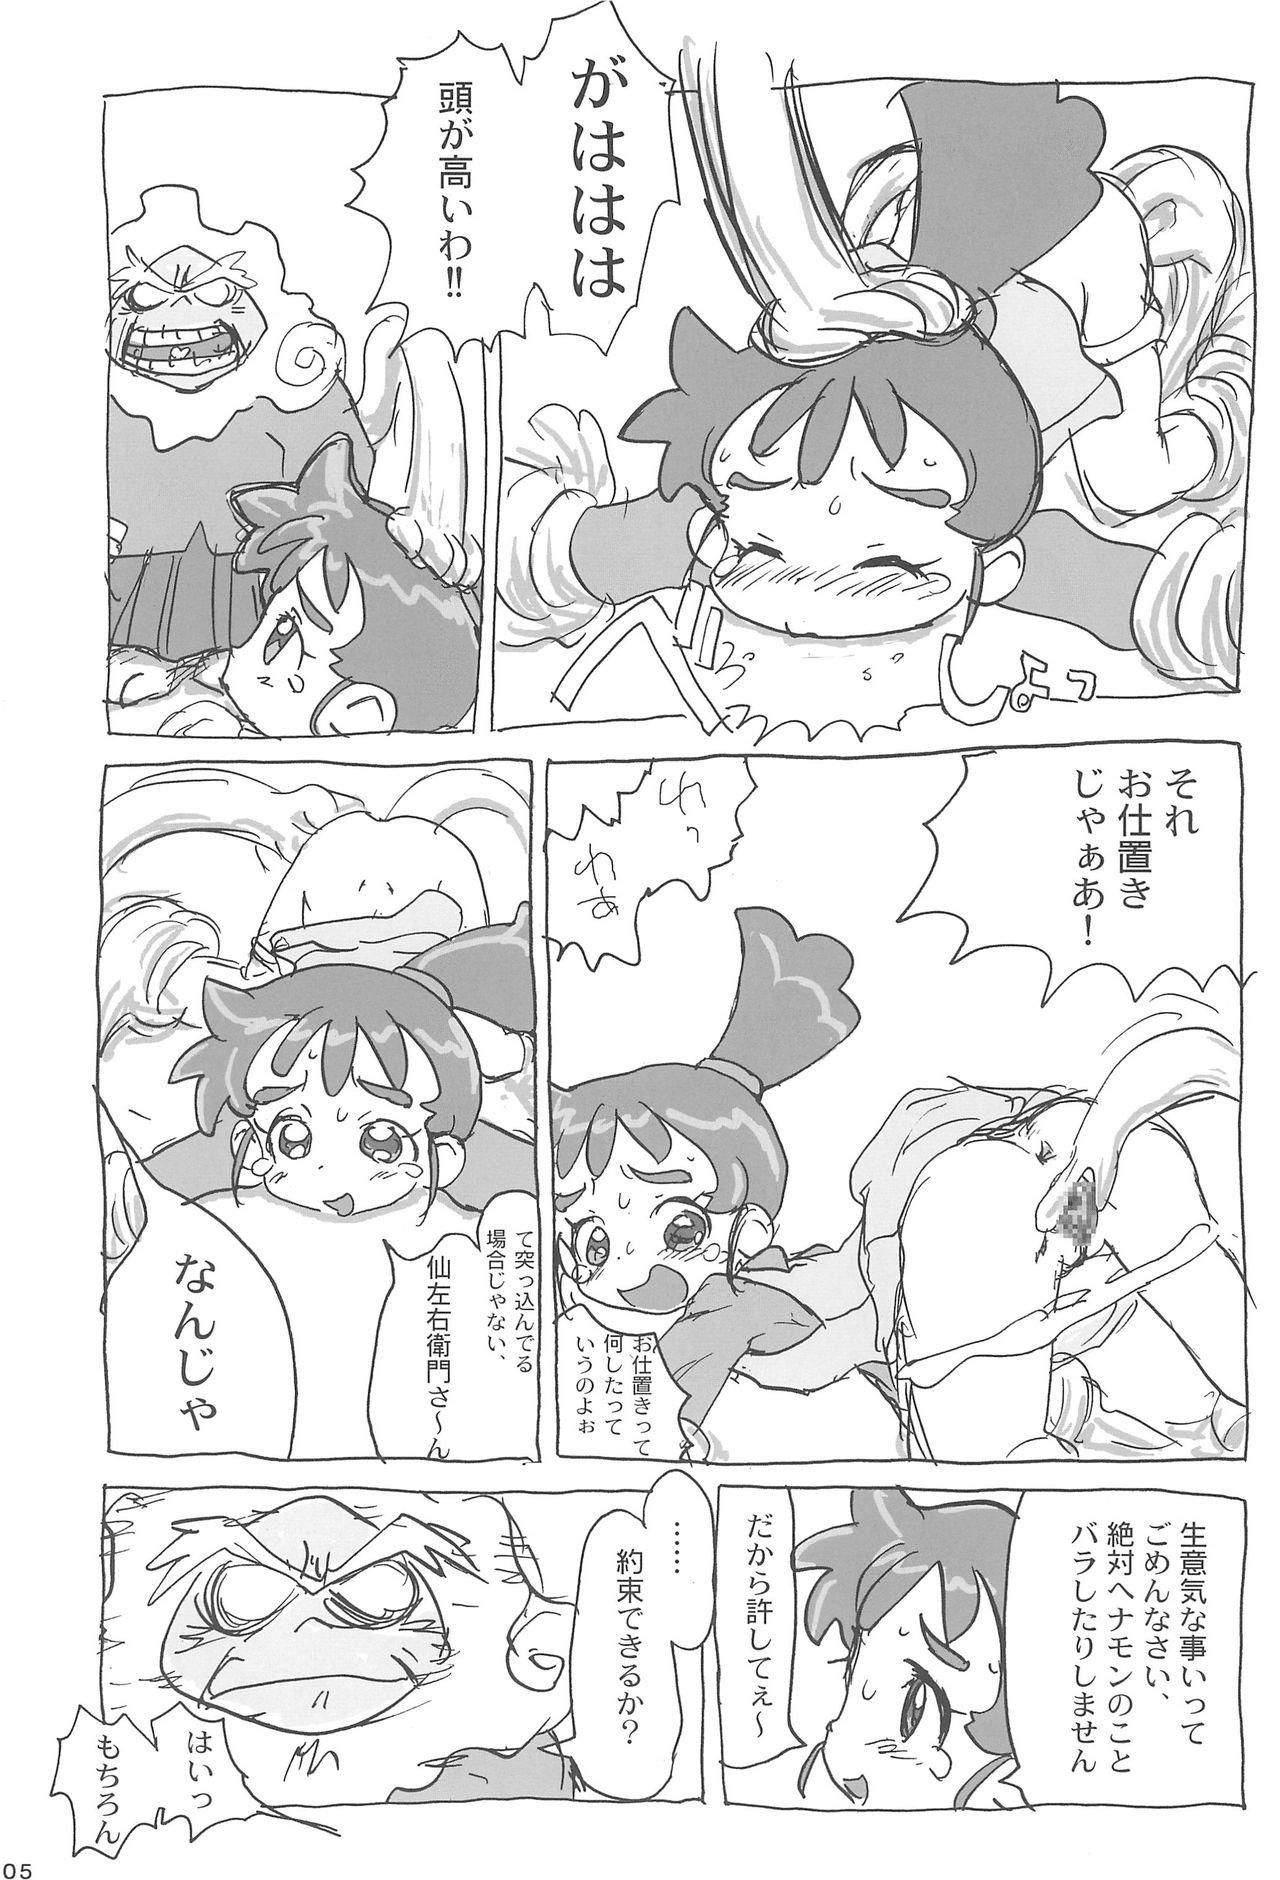 Village Ana no Hana - Kasumin Married - Page 7